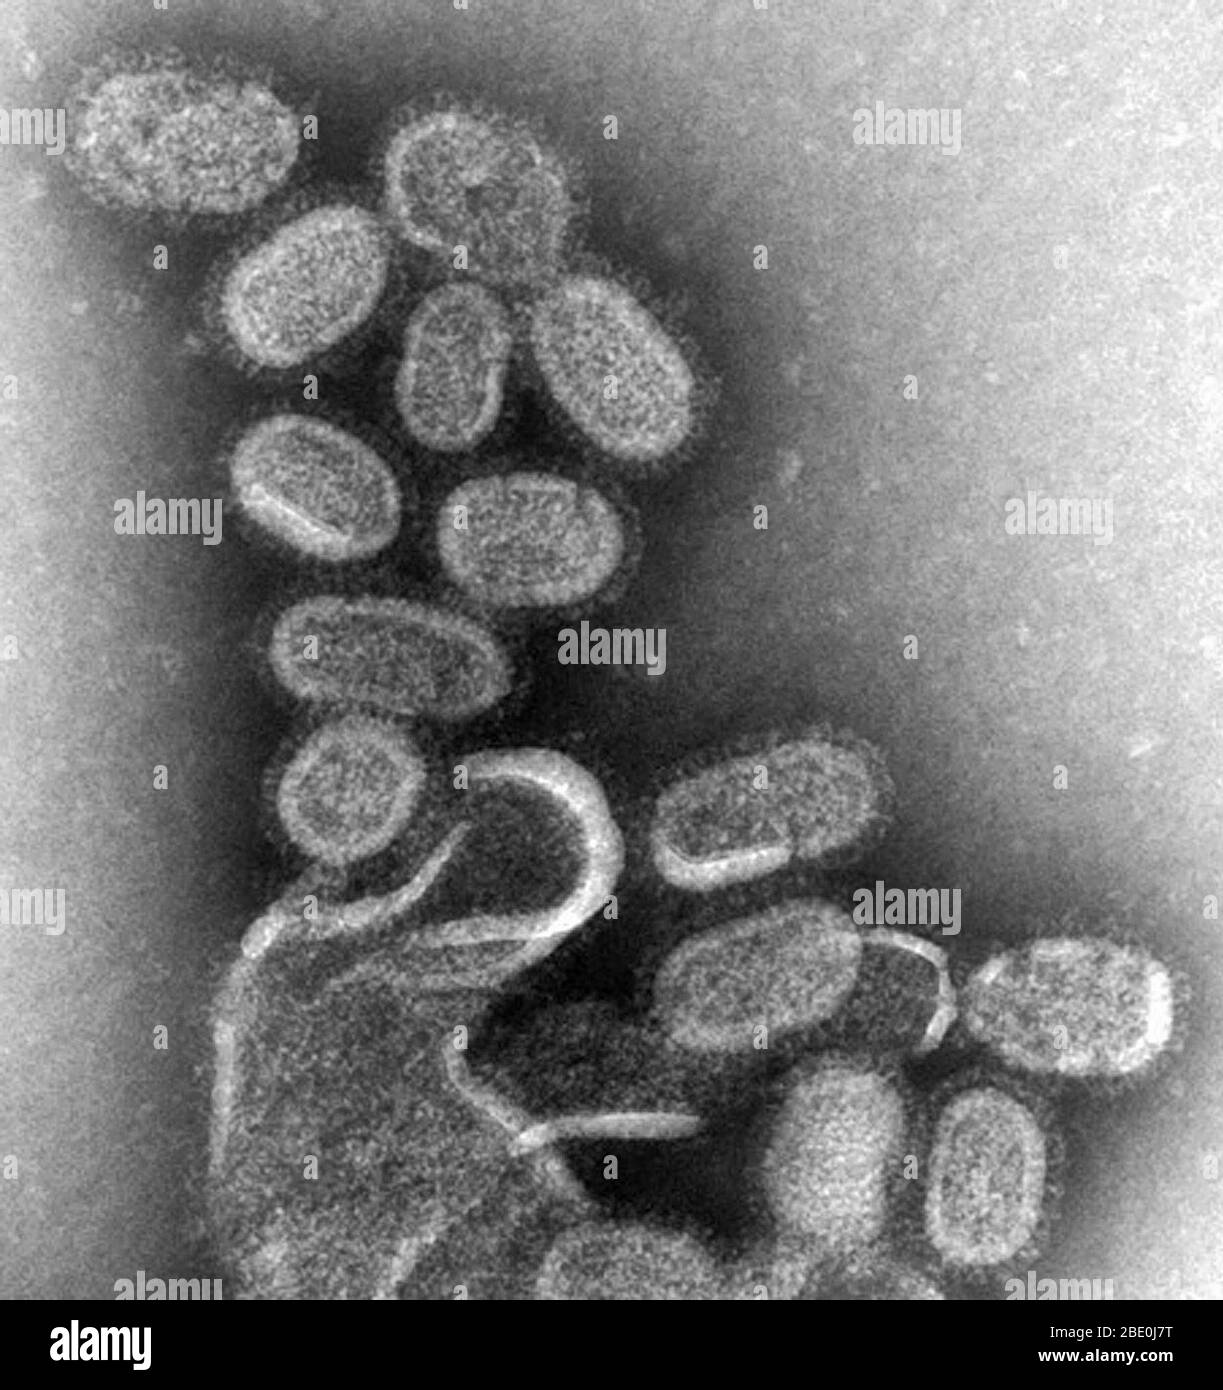 Le TEM coloré par des négatifs montre des virions de l'influenza recréés en 1918 qui ont été recueillis à partir du surnageant d'une culture cellulaire de Madin-Darby Canine Kidney (MDCK) infectée en 1918, 18 heures après l'infection. Afin de séquestrer ces virons, les cellules MDCK ont été essorées (centrifugation) et le virus de 1918 présent dans le liquide a été fixé pour coloration négative. Le Dr Terrence Tumpey, microbiologiste du personnel et membre du Centre national des maladies infectieuses (NCID), a recréé le virus de l'influenza de 1918 afin d'identifier les caractéristiques qui ont fait de cet organisme un pathogène si mortel. Efforts de recherche Banque D'Images